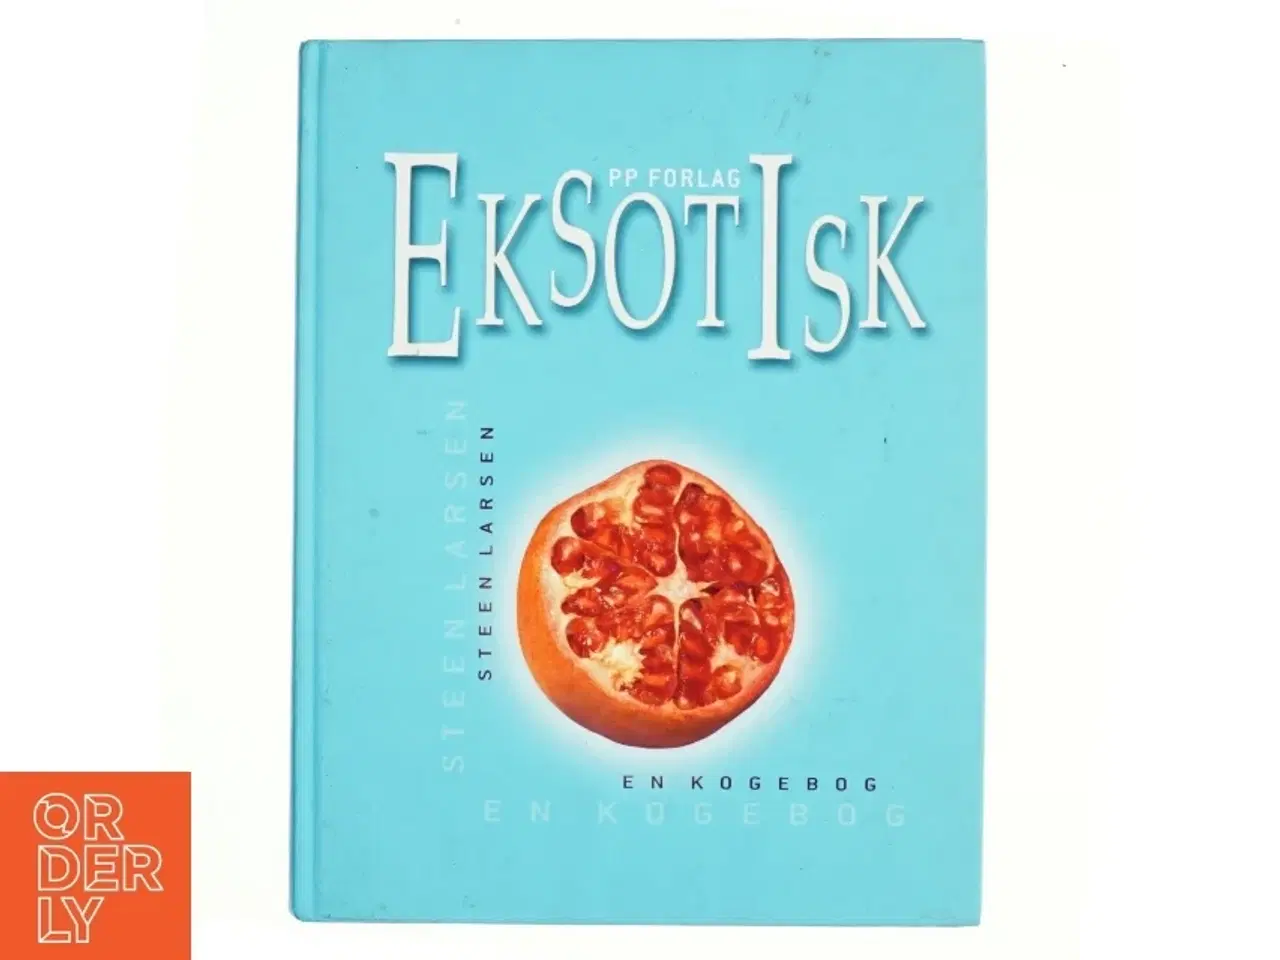 Billede 1 - Eksotisk, en kogebog af Steen Larsen